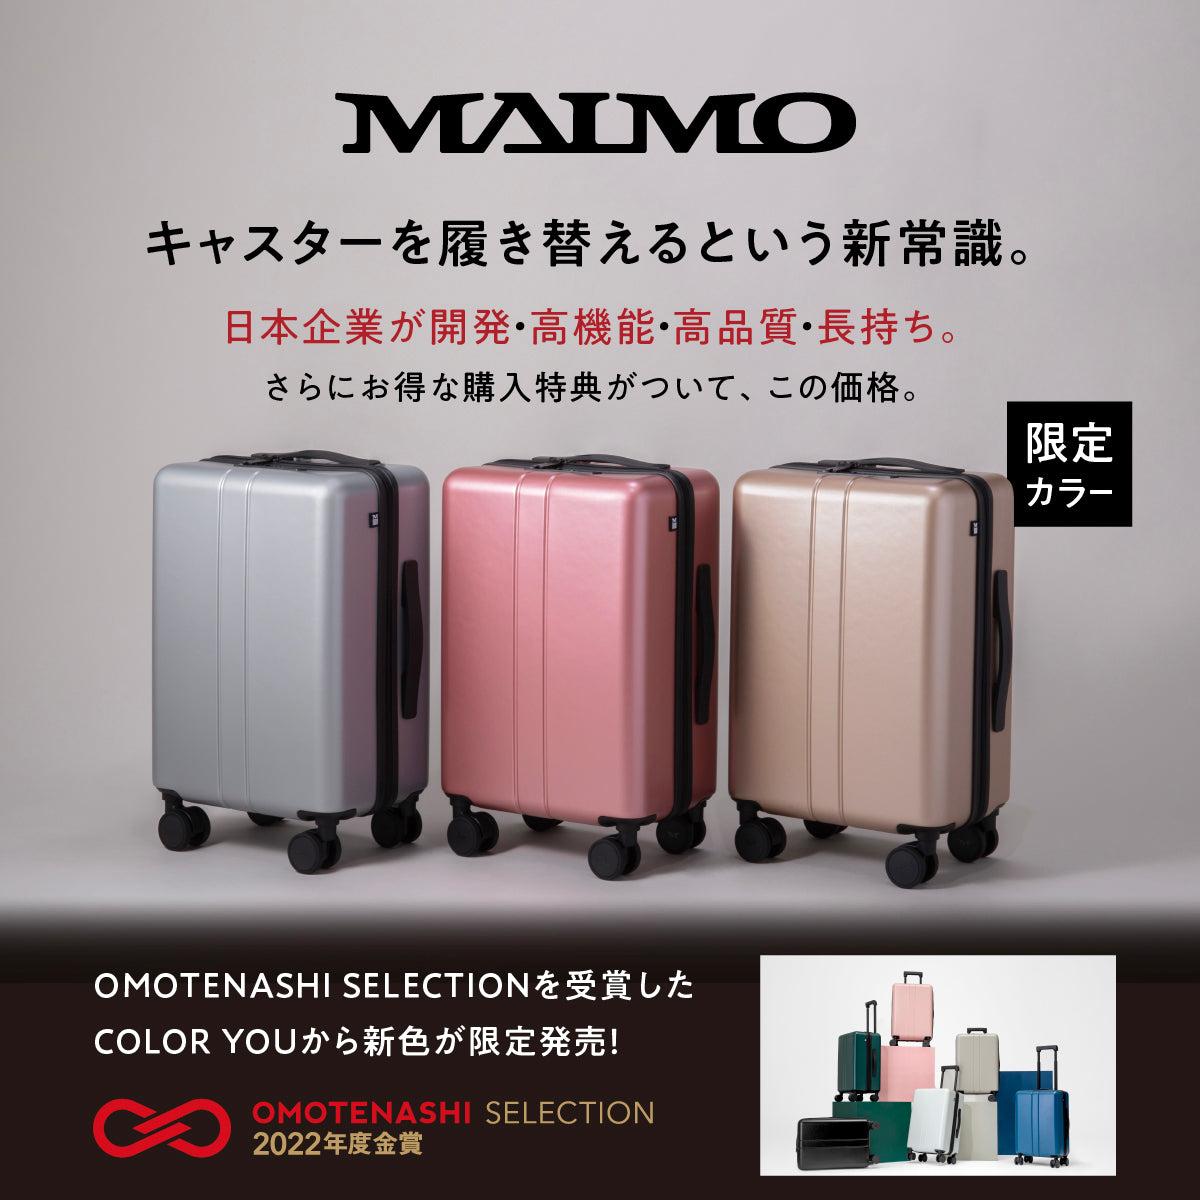 COLOR YOU 【限定色】ブライトシルバー Sサイズ – MAIMO公式オンライン